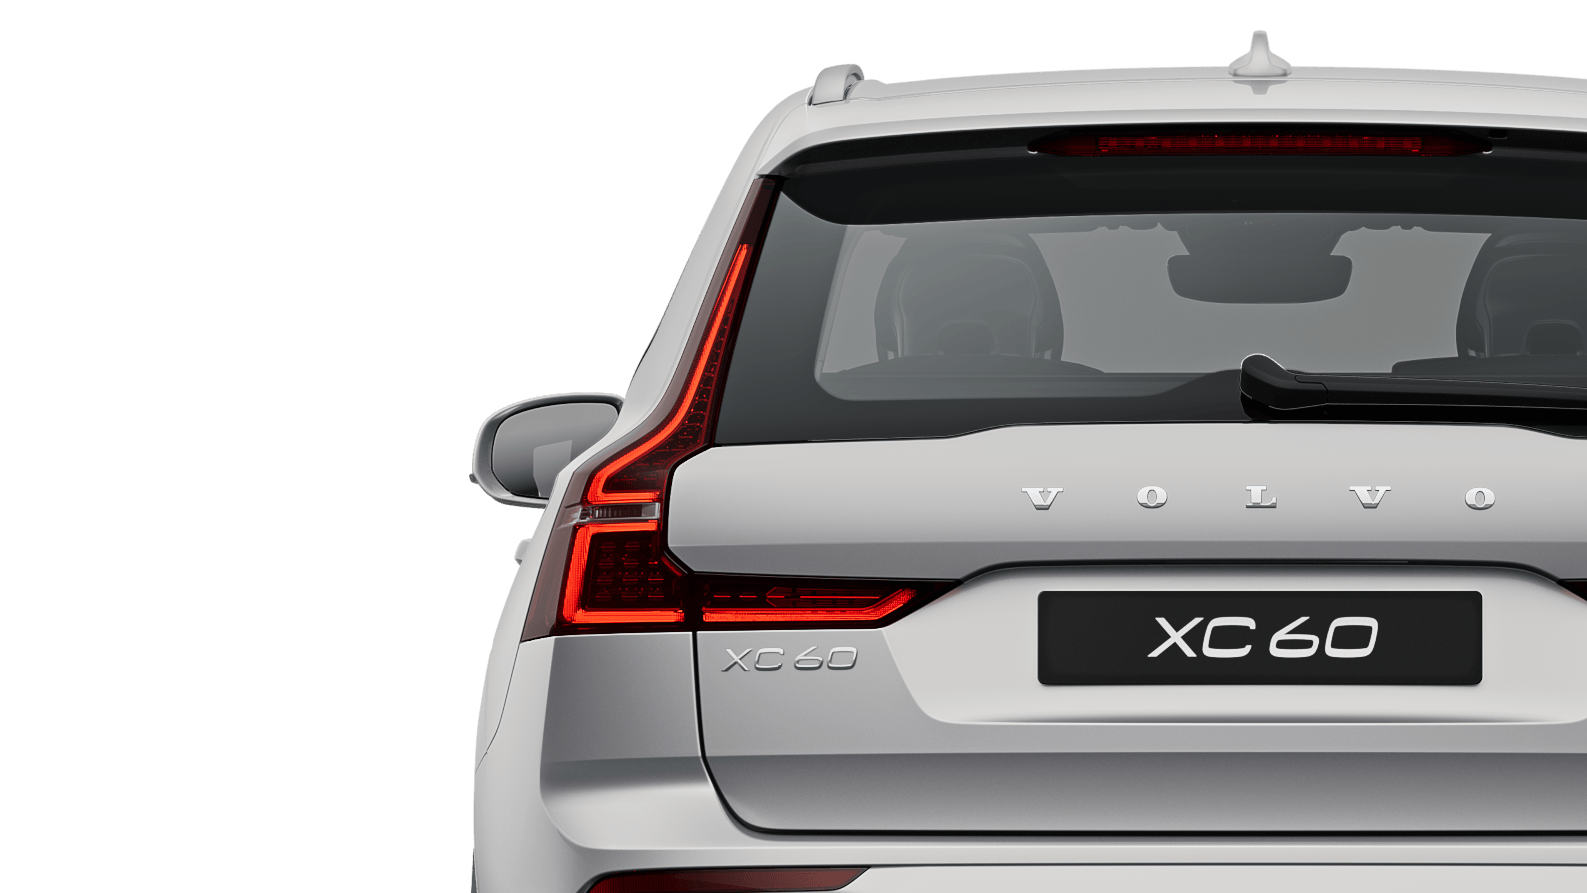 Un Volvo XC60 Recharge híbrido enchufable en color Silver Dawn parado